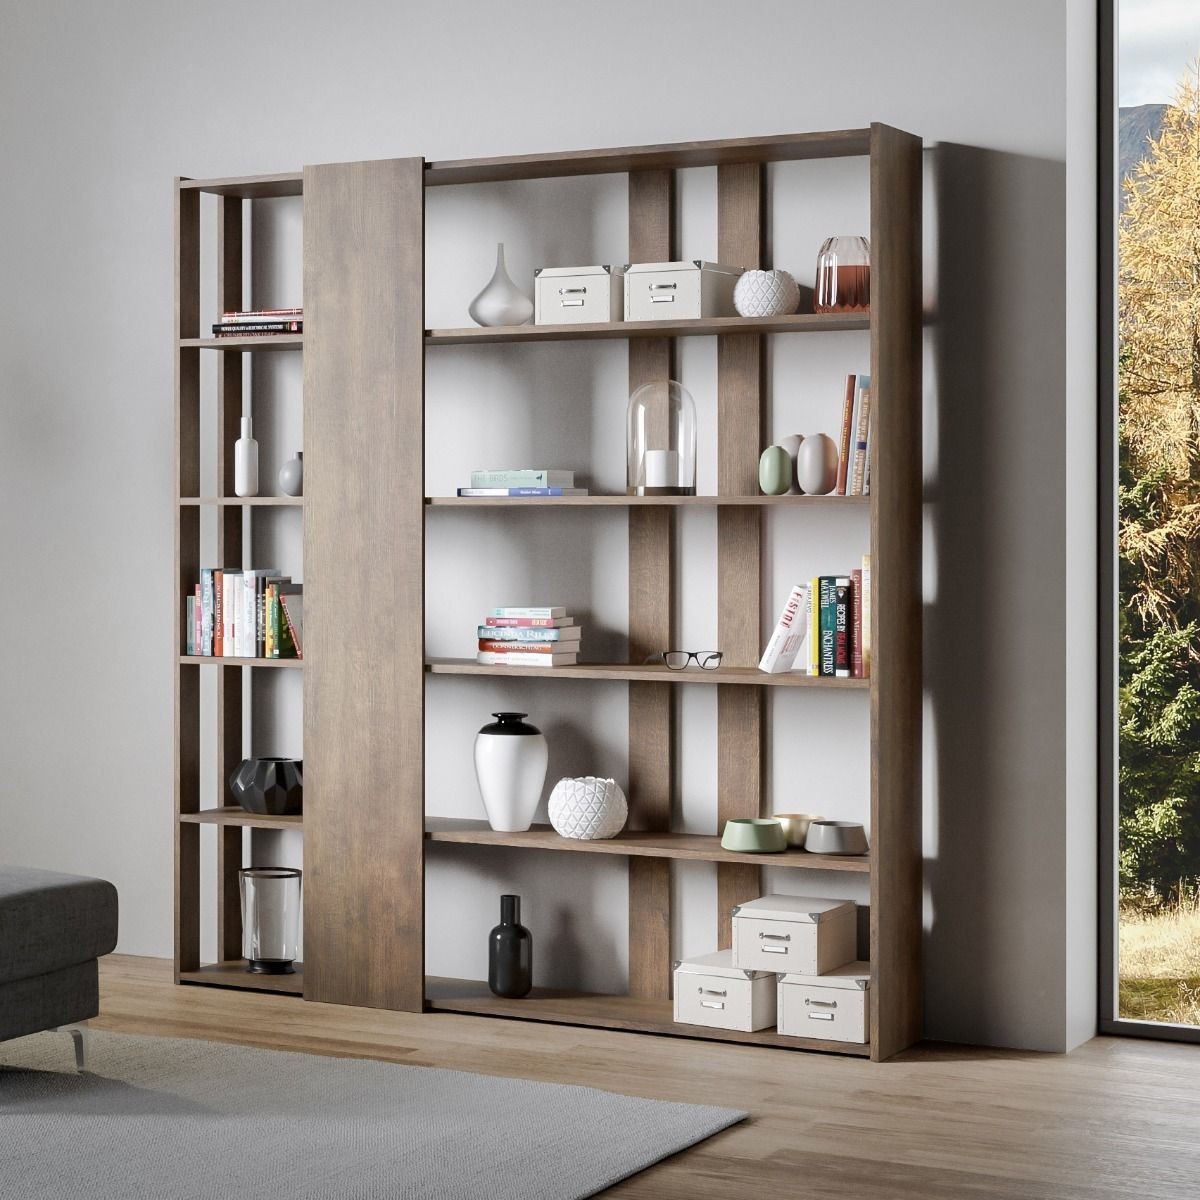 Libreria mobile a parete Kato adattabile in ogni ambiente, dall